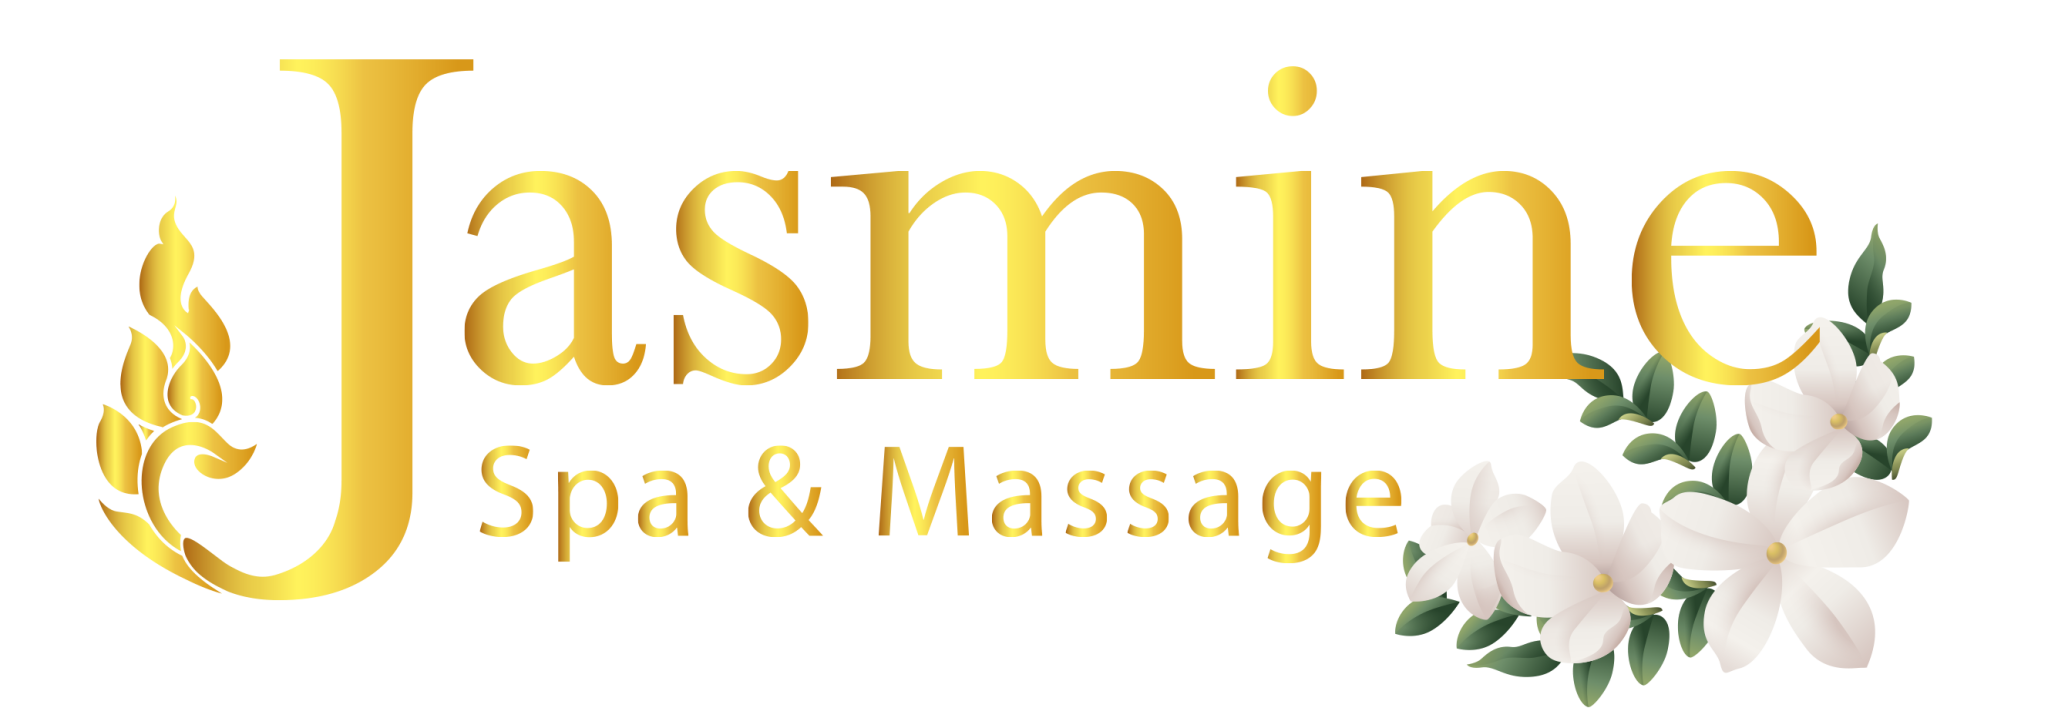 Jasmine massage spa